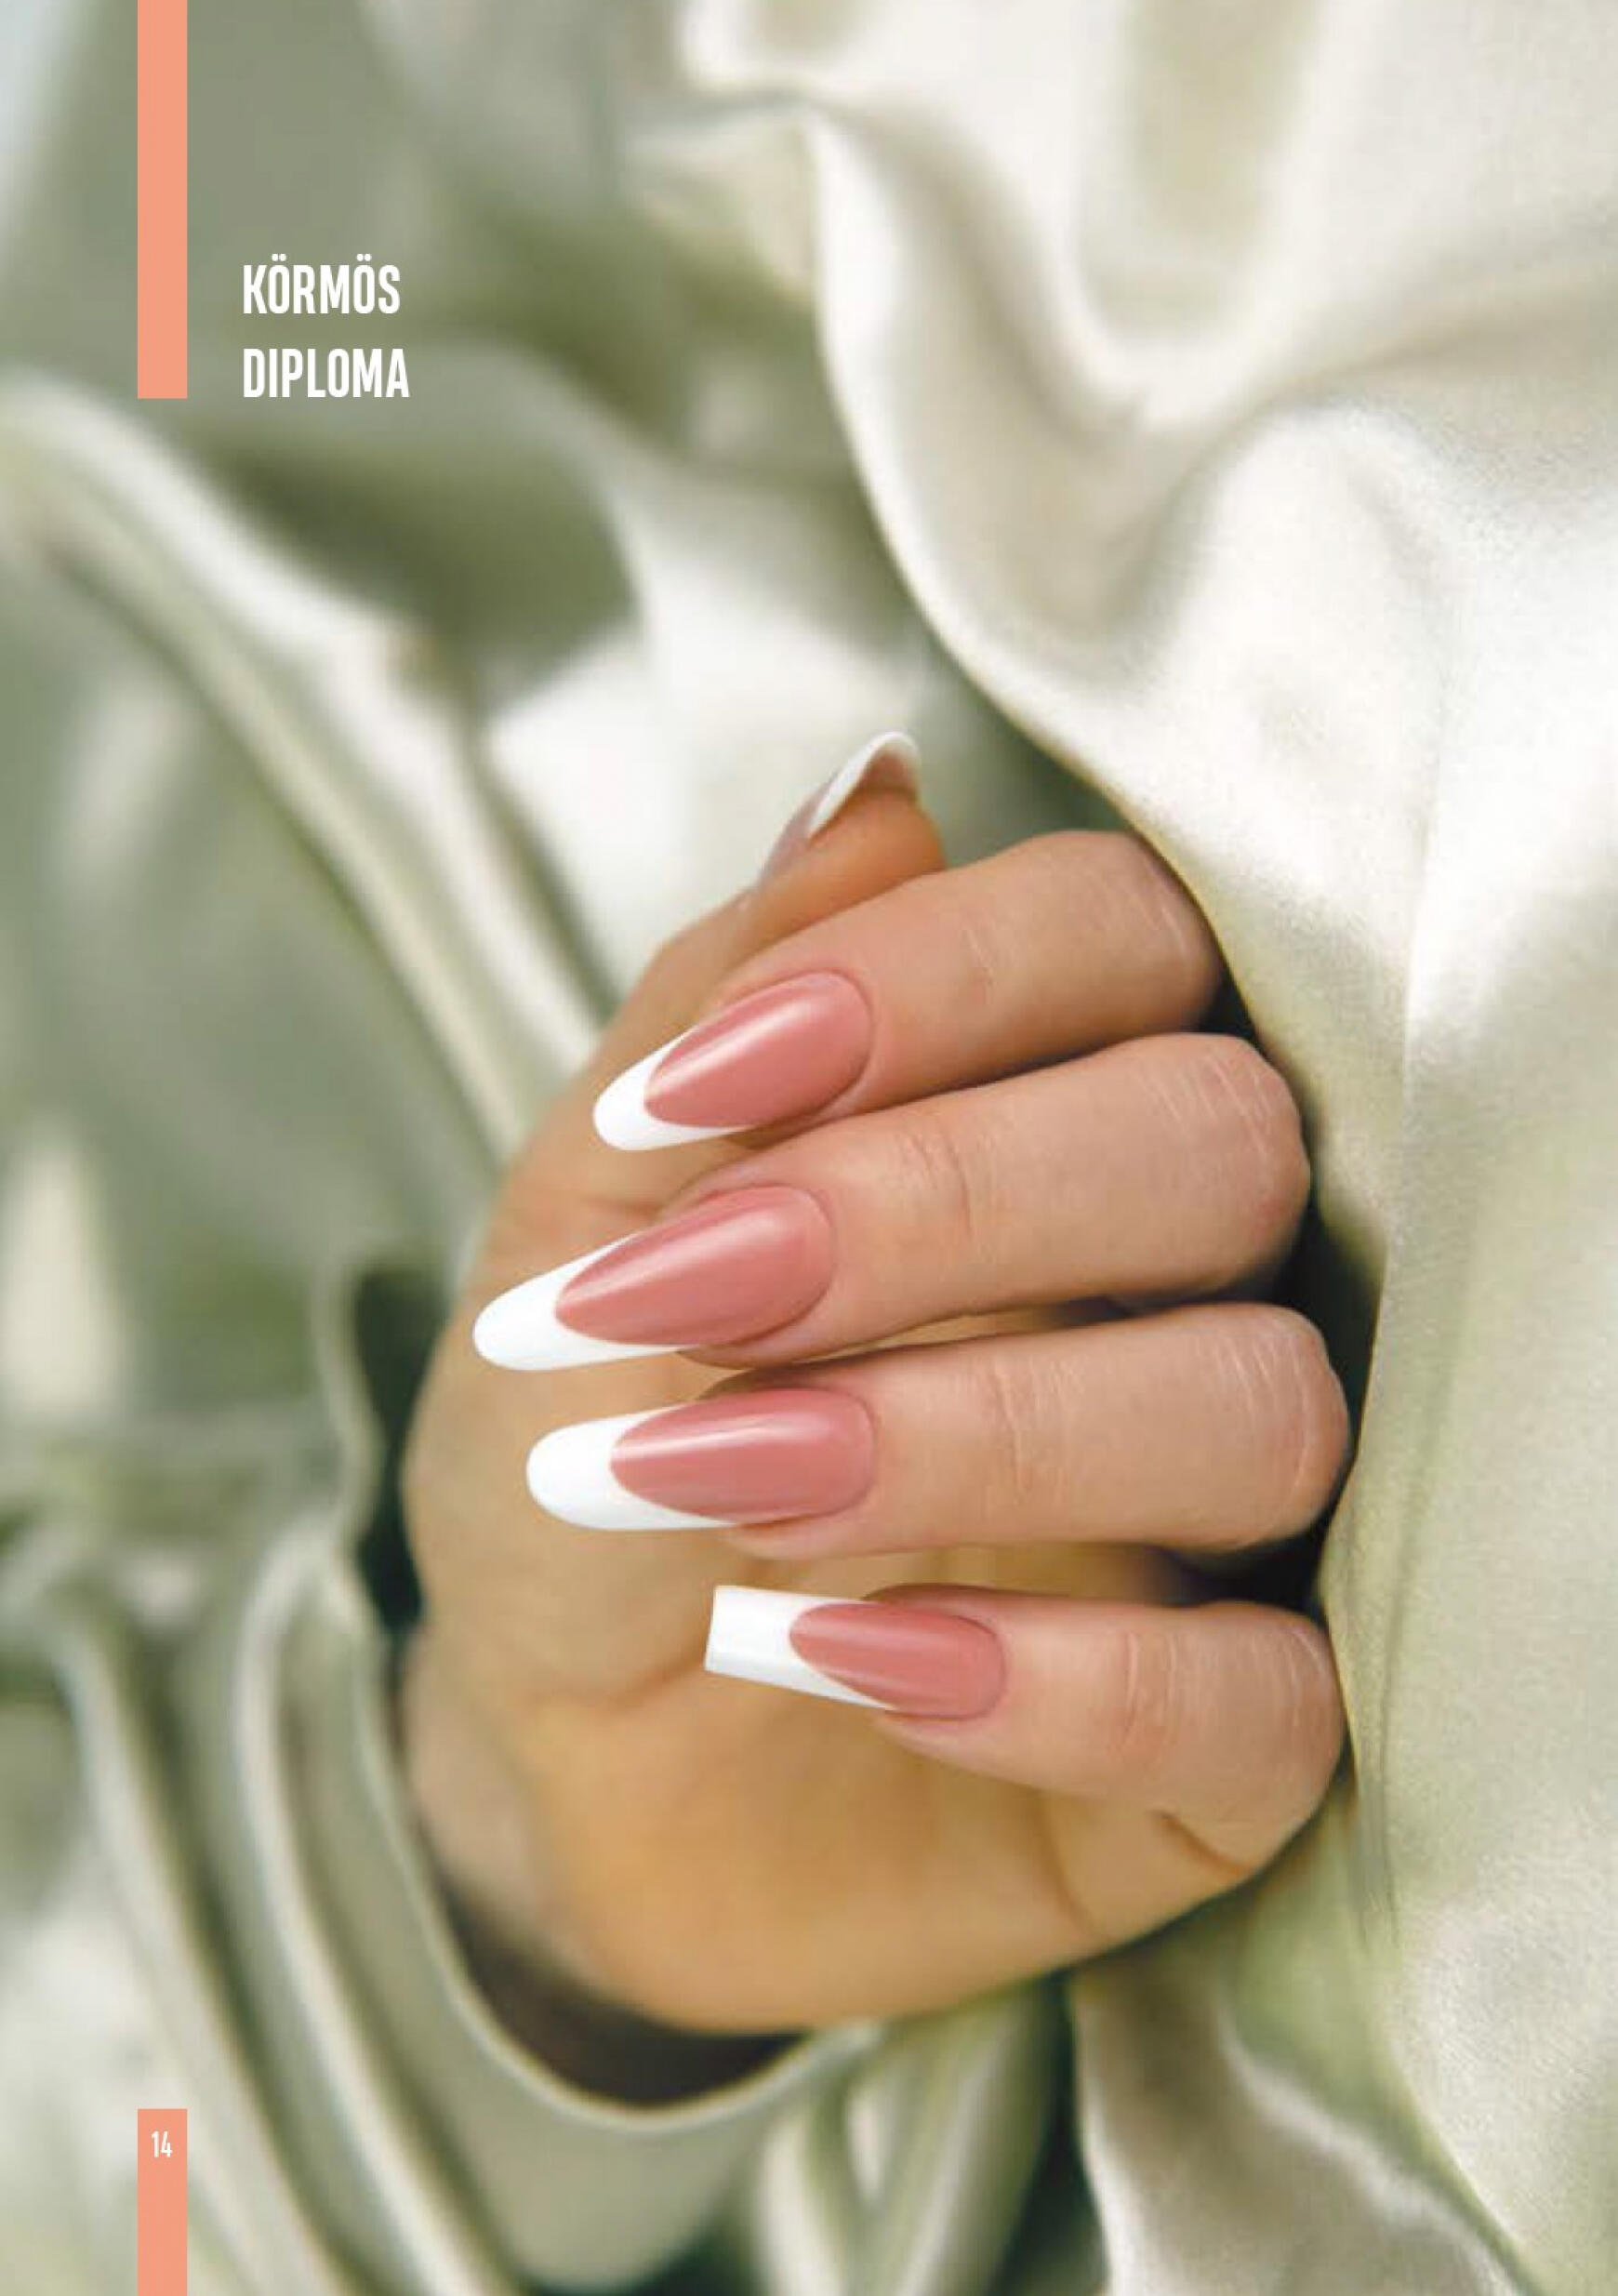 crystal-nails - Aktuális újság Crystal Nails - Tavasz/Nyár 05.01. - 08.31. - page: 14